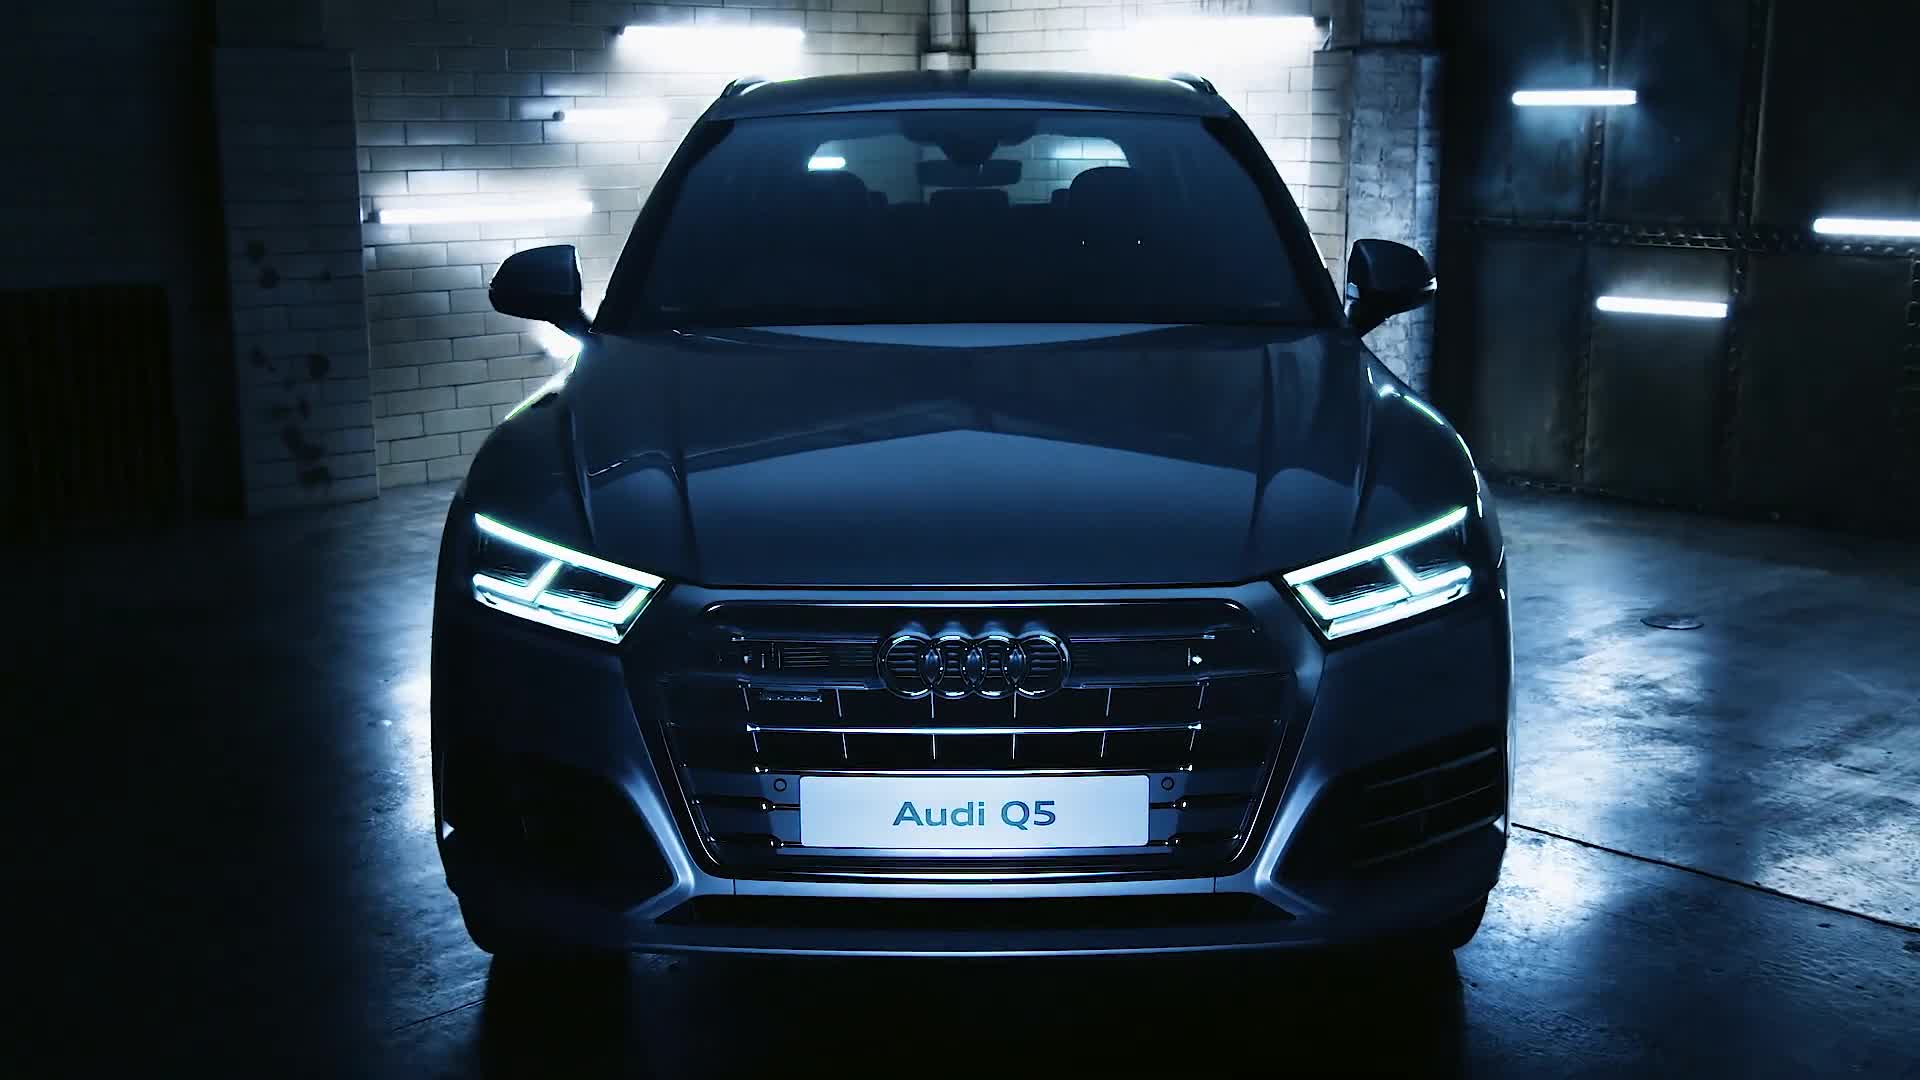 Audi Q5 - Car Choice Awards 